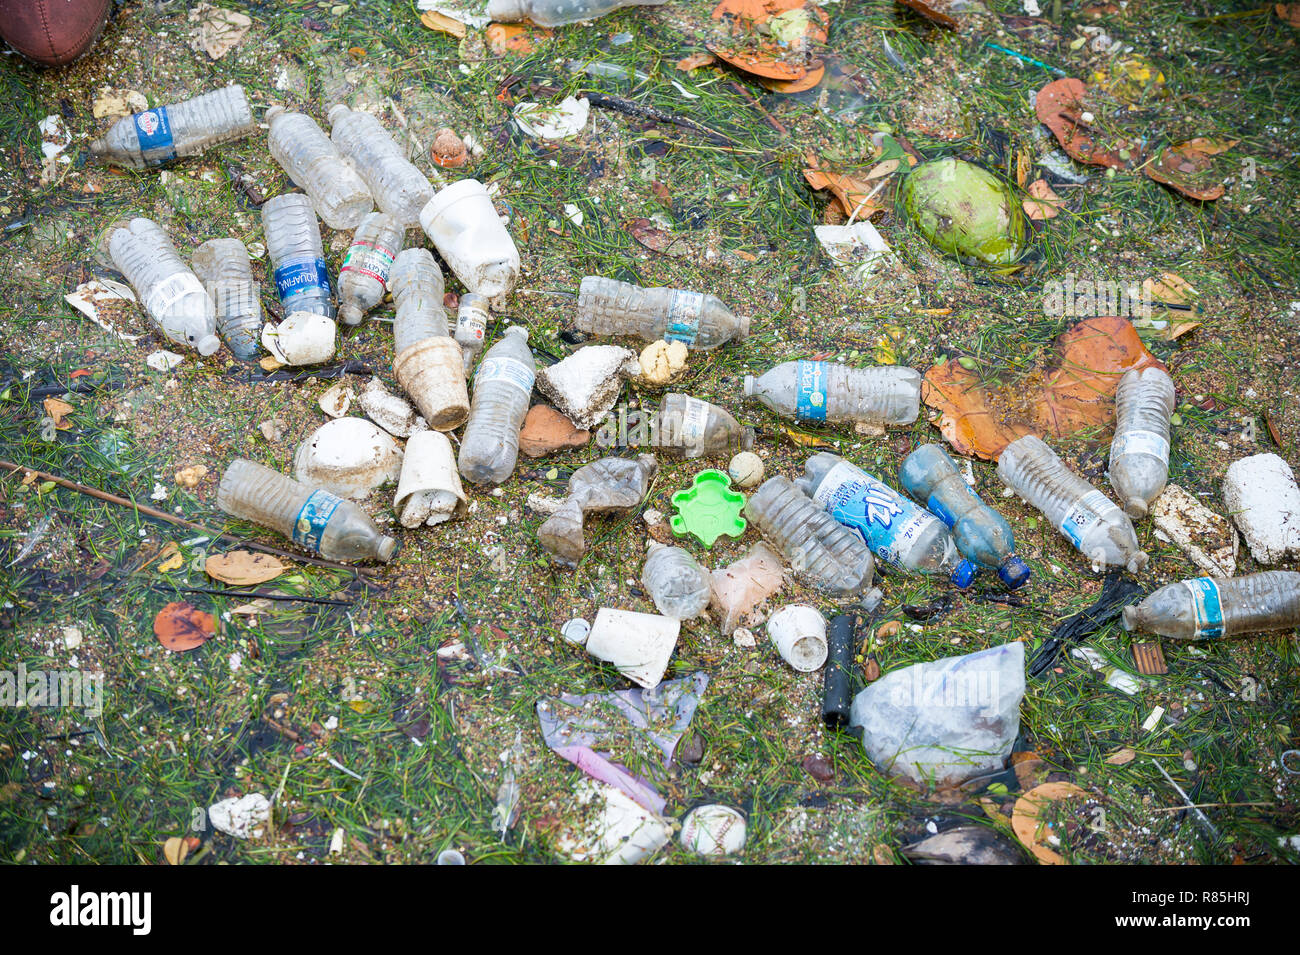 MIAMI - Septembre, 2018 : les bouteilles d'eau en plastique, des tasses, et des morceaux de styromousse flottent dans la baie de Biscayne, où la pollution des océans est un problème chronique. Banque D'Images